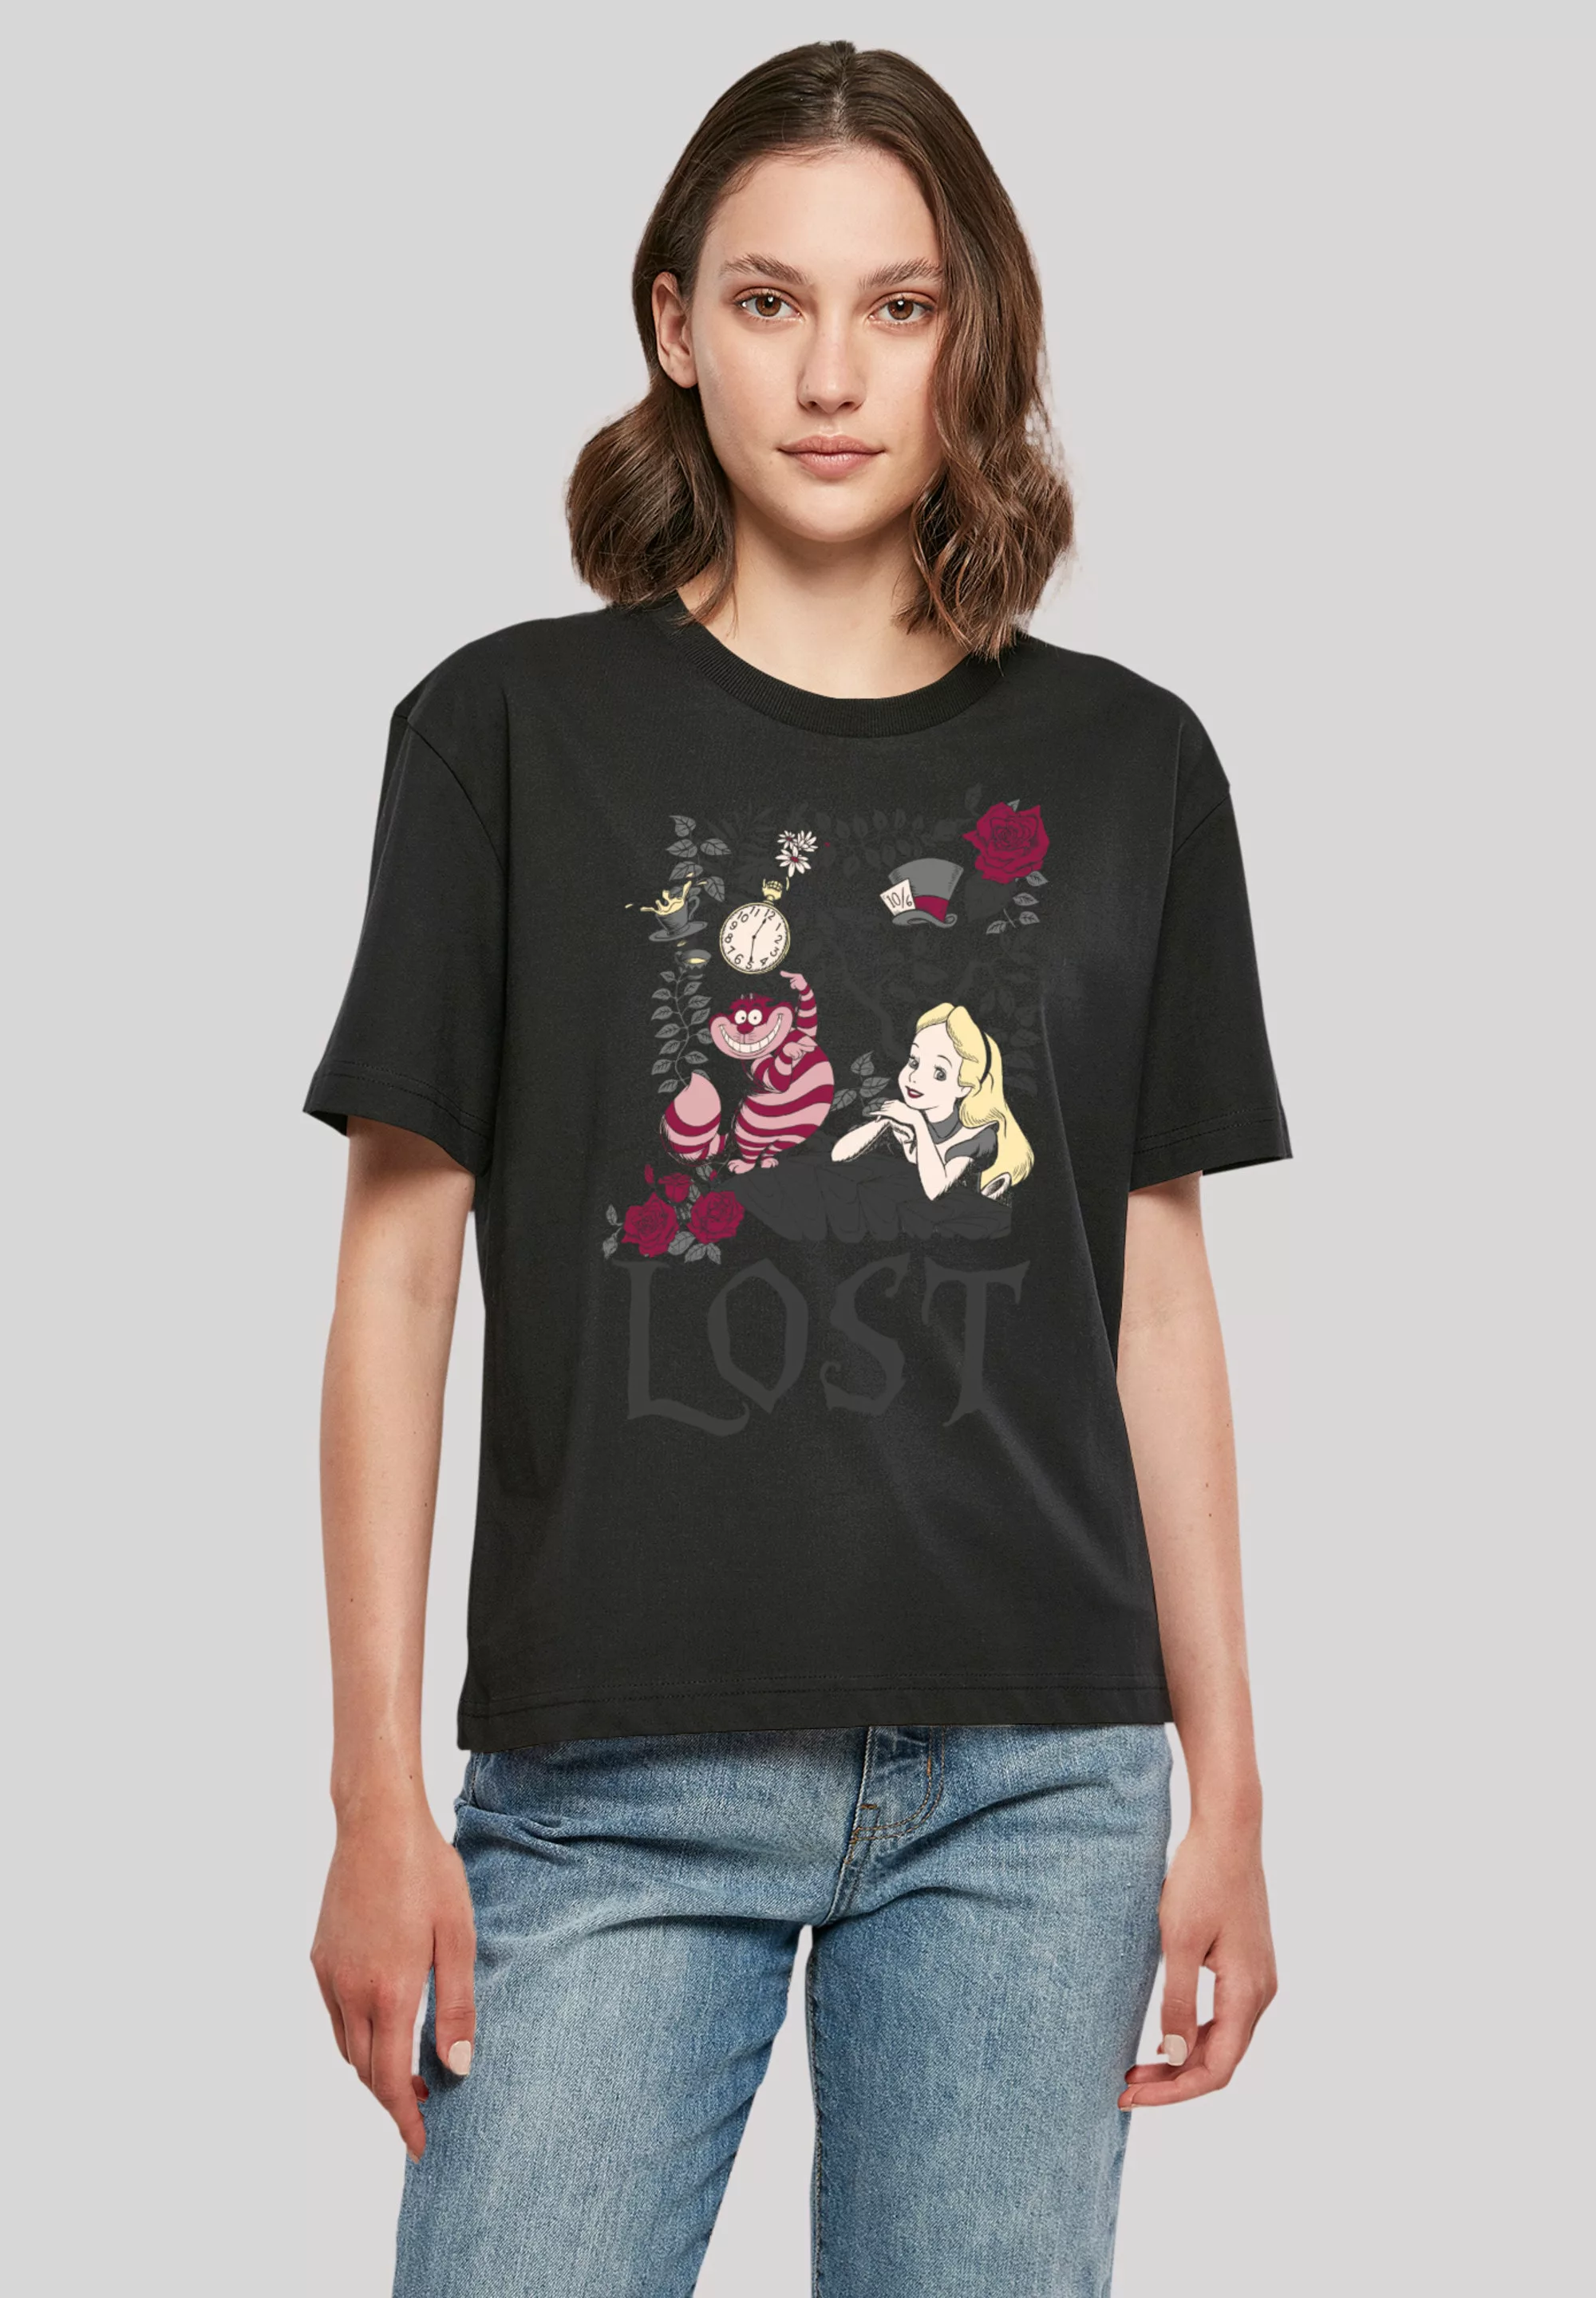 F4NT4STIC T-Shirt "Disney Alice im Wunderland Lost" günstig online kaufen